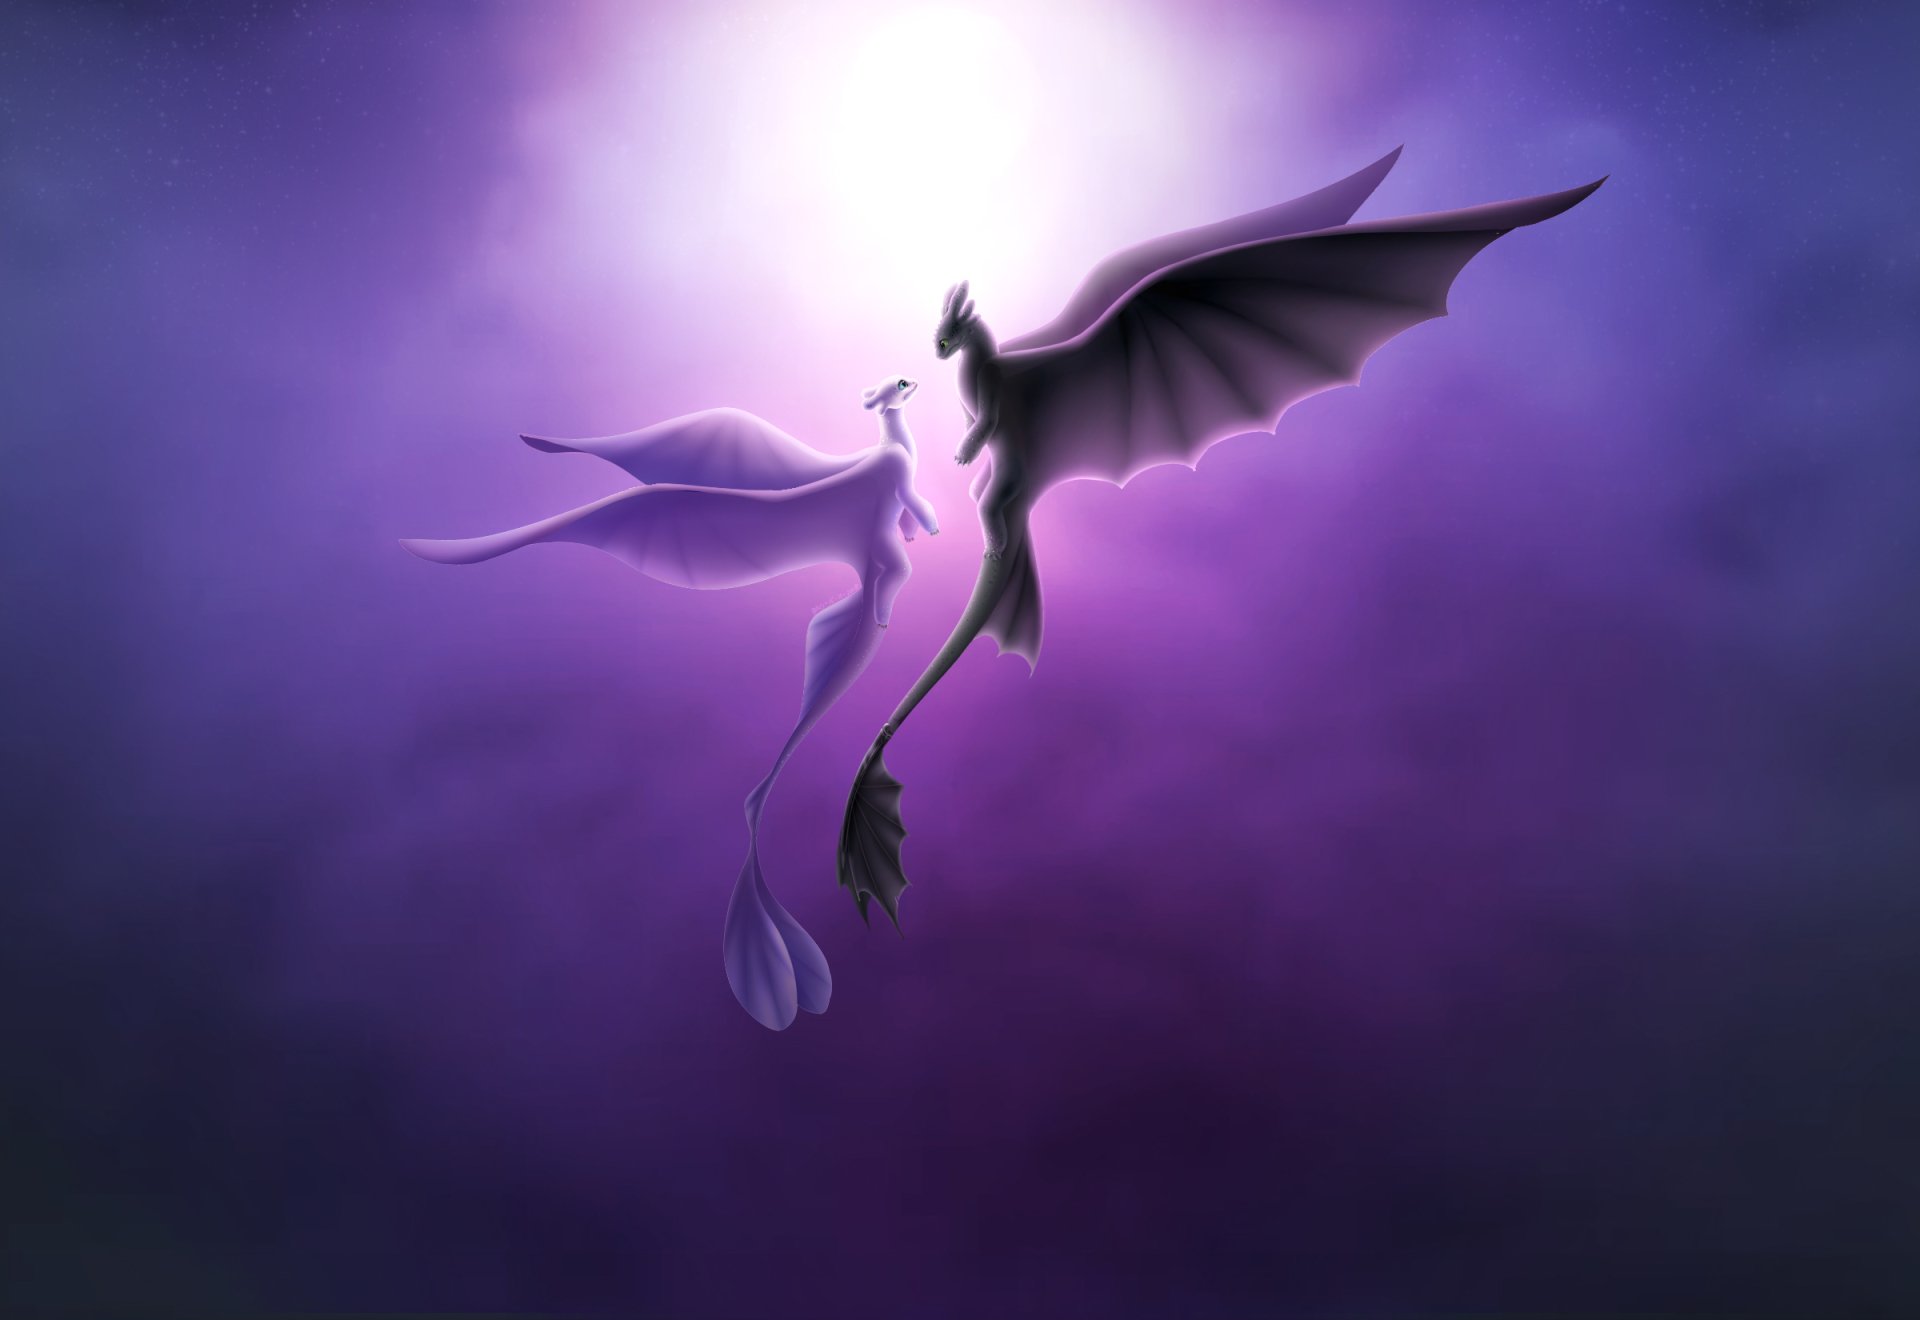 あなたのドラゴンのhd壁紙を訓練する方法,紫の,バイオレット,羽,空,架空の人物